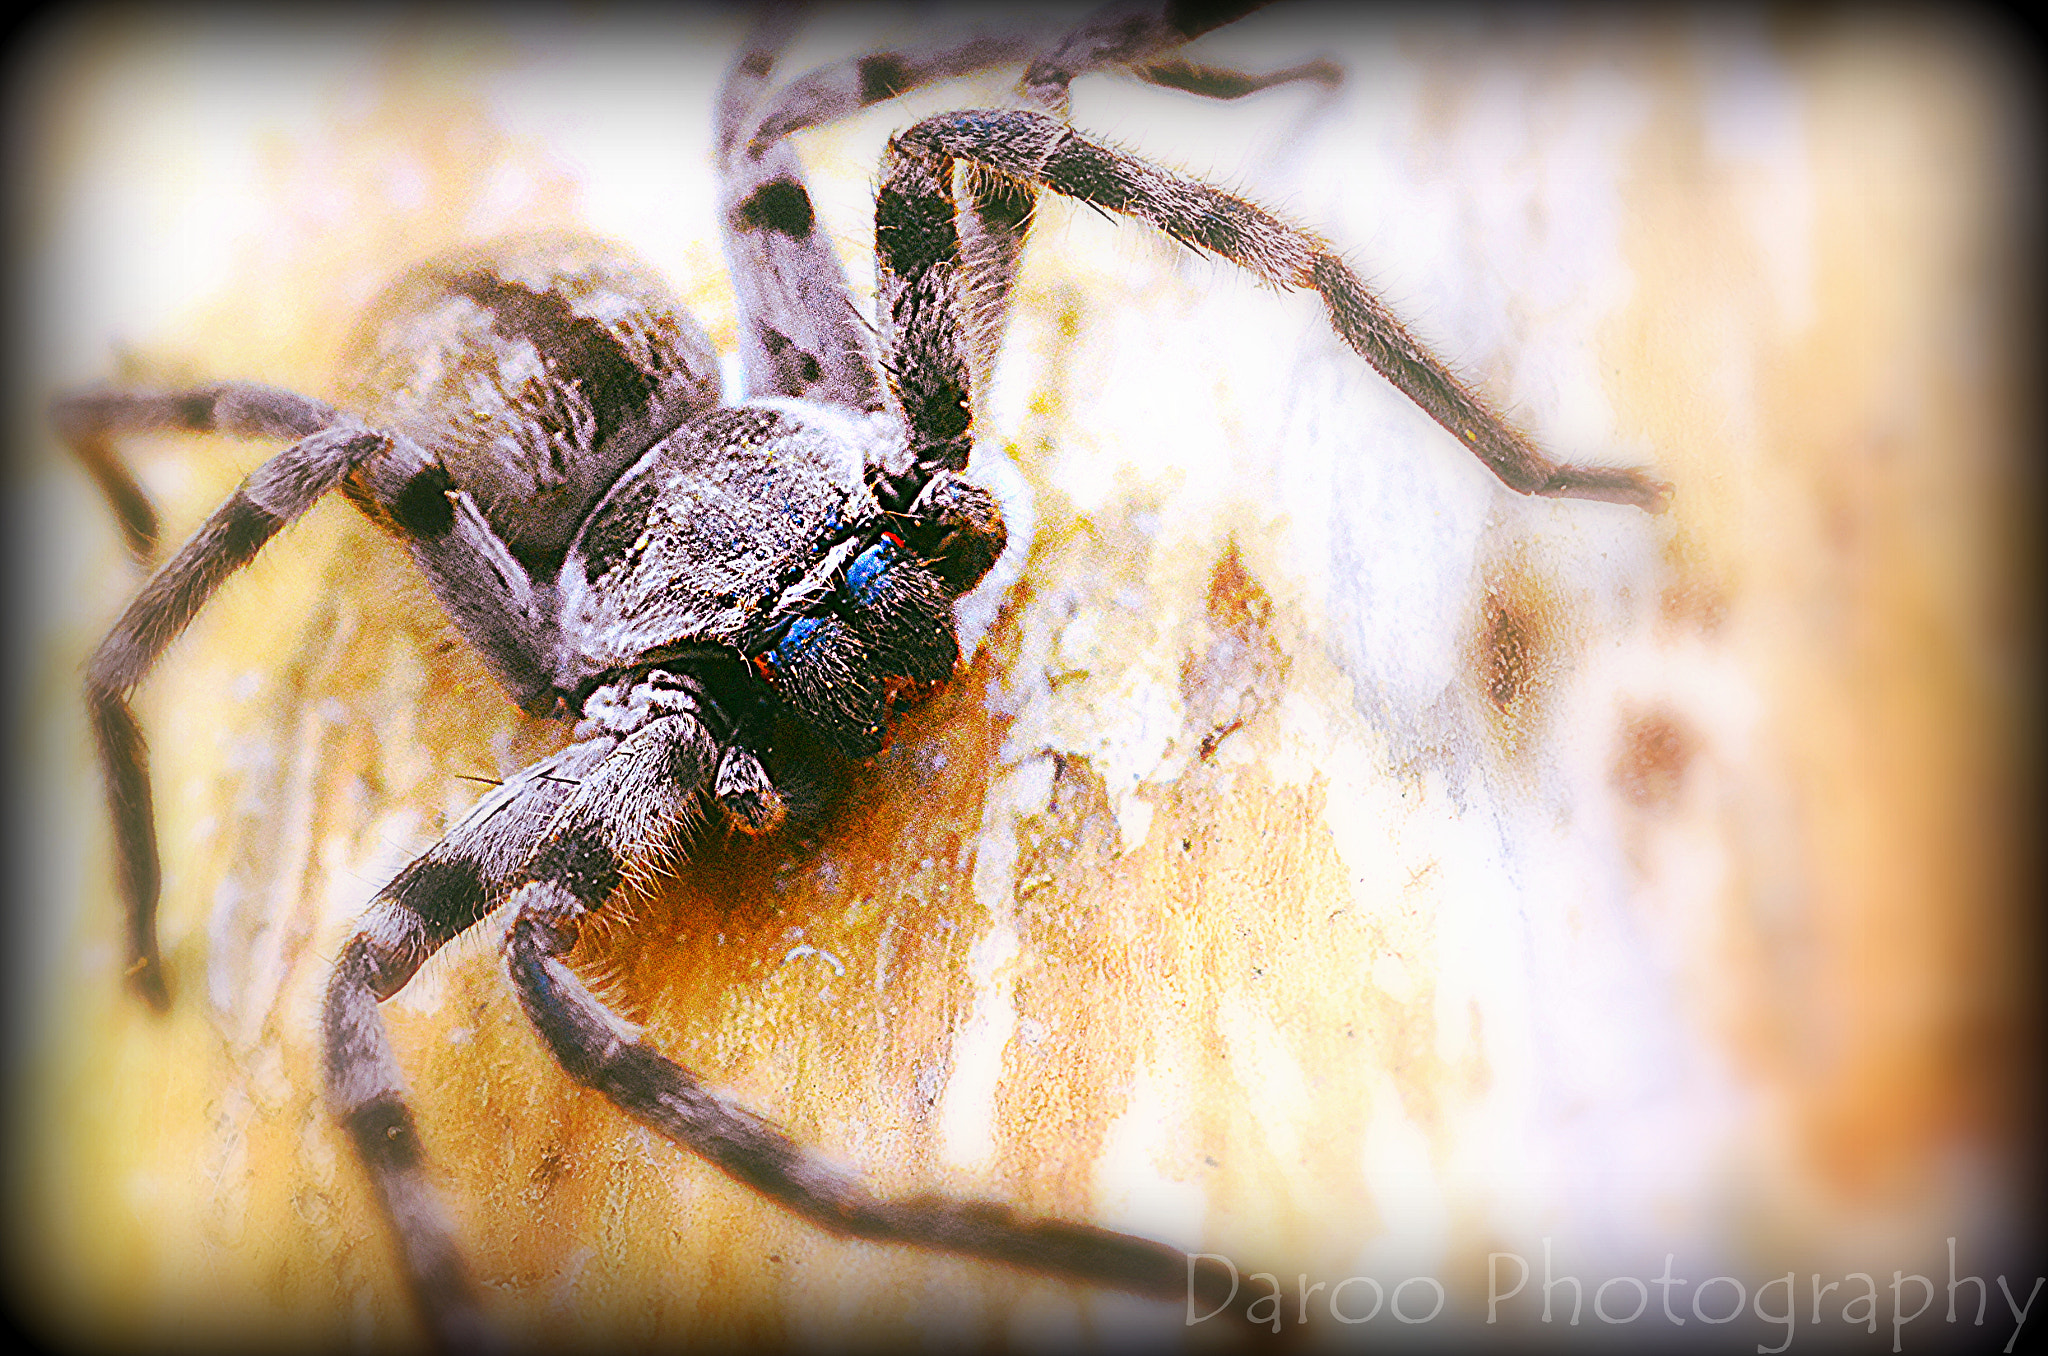 AF Nikkor 18mm f/2.8D sample photo. Araña en su habitat - spider in their habitat photography